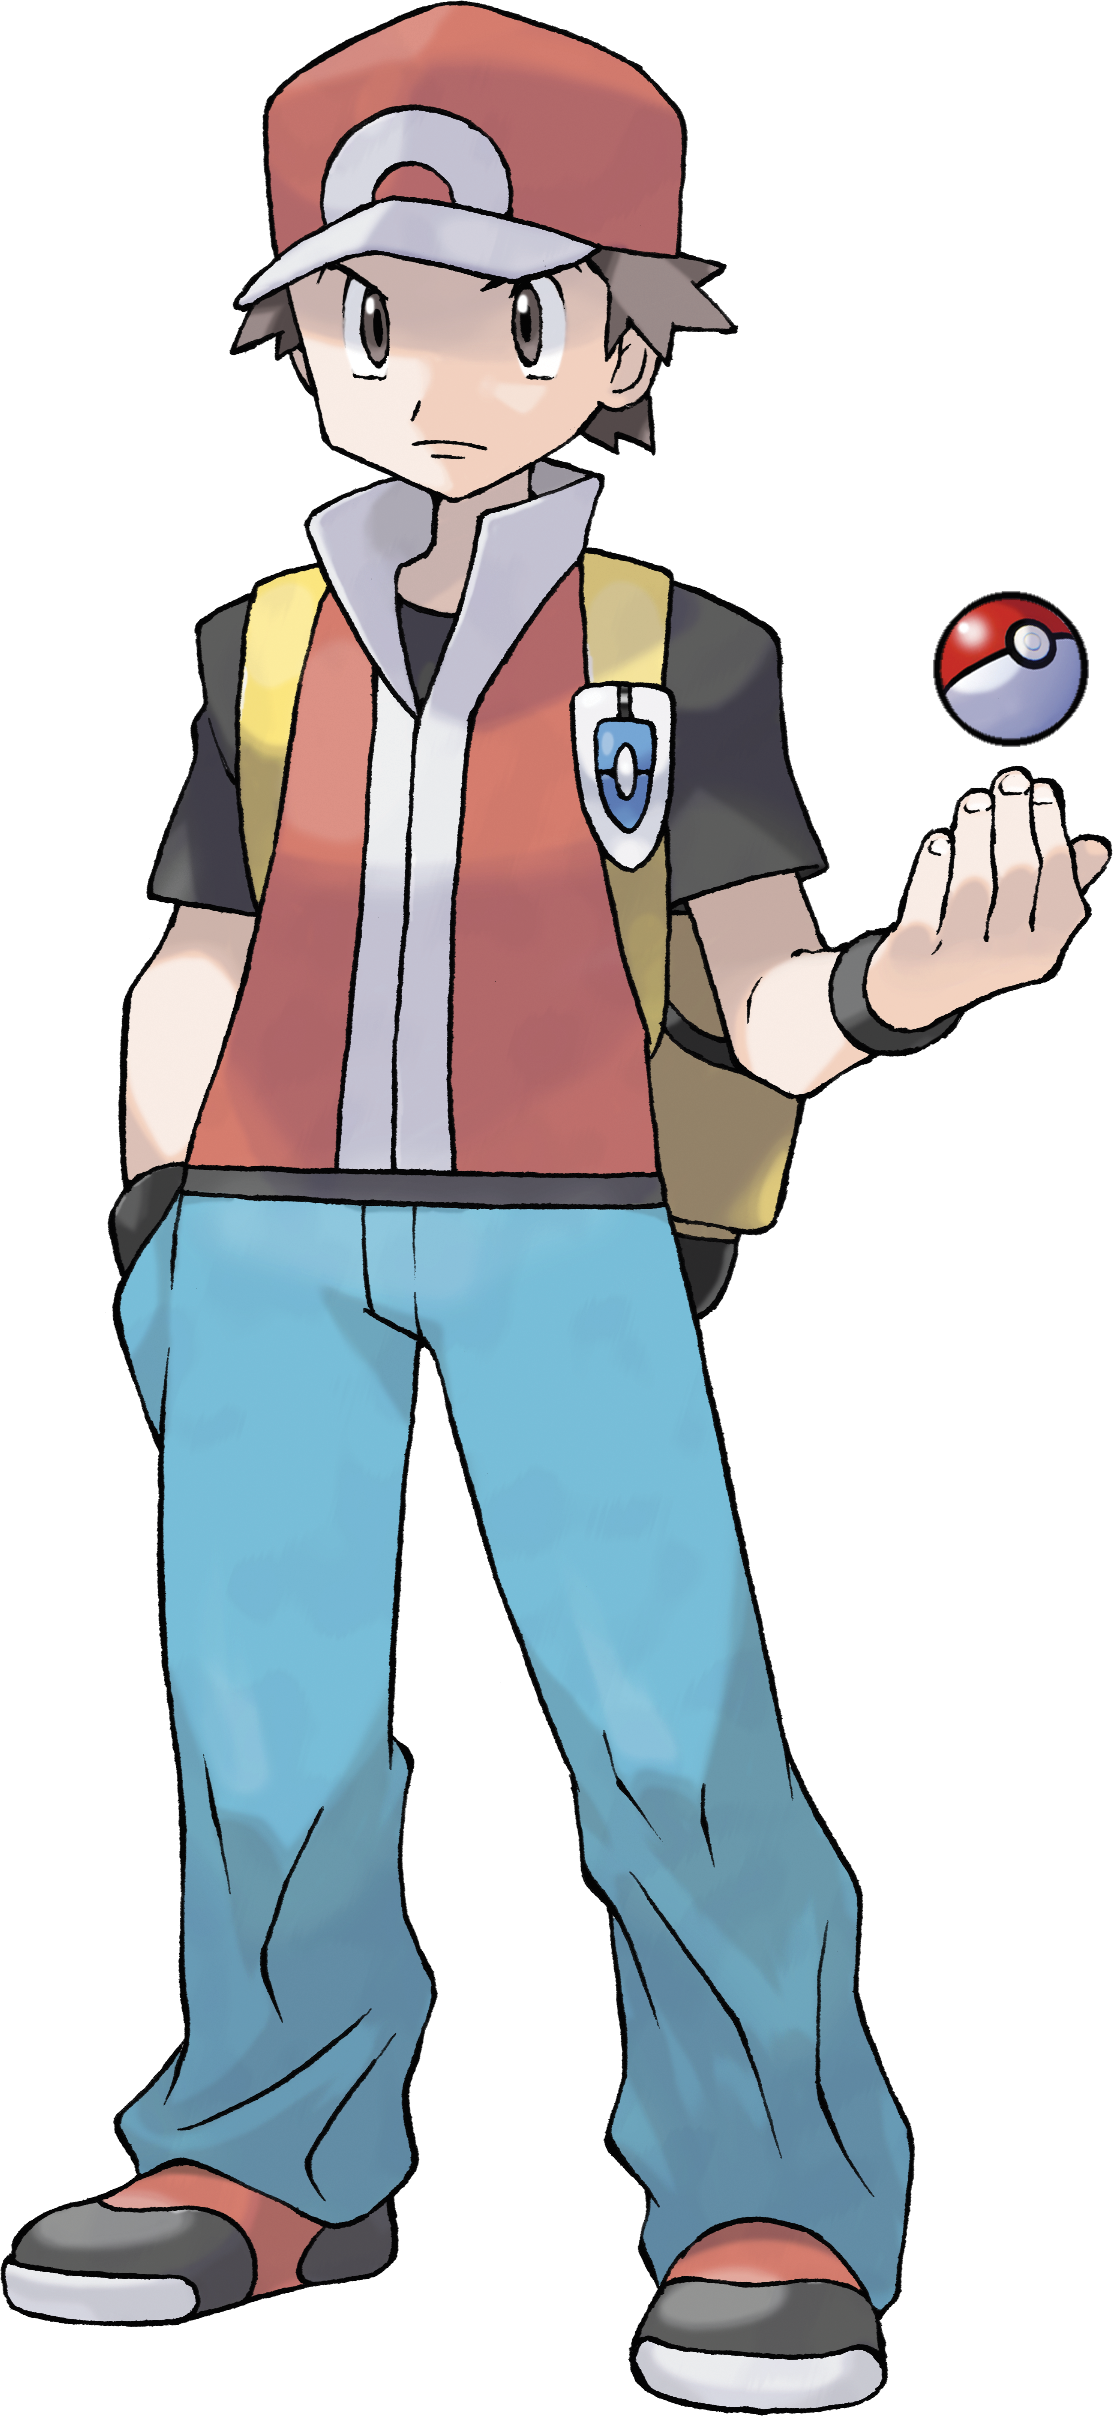 Pokémon Trainer, Pokémon Wiki